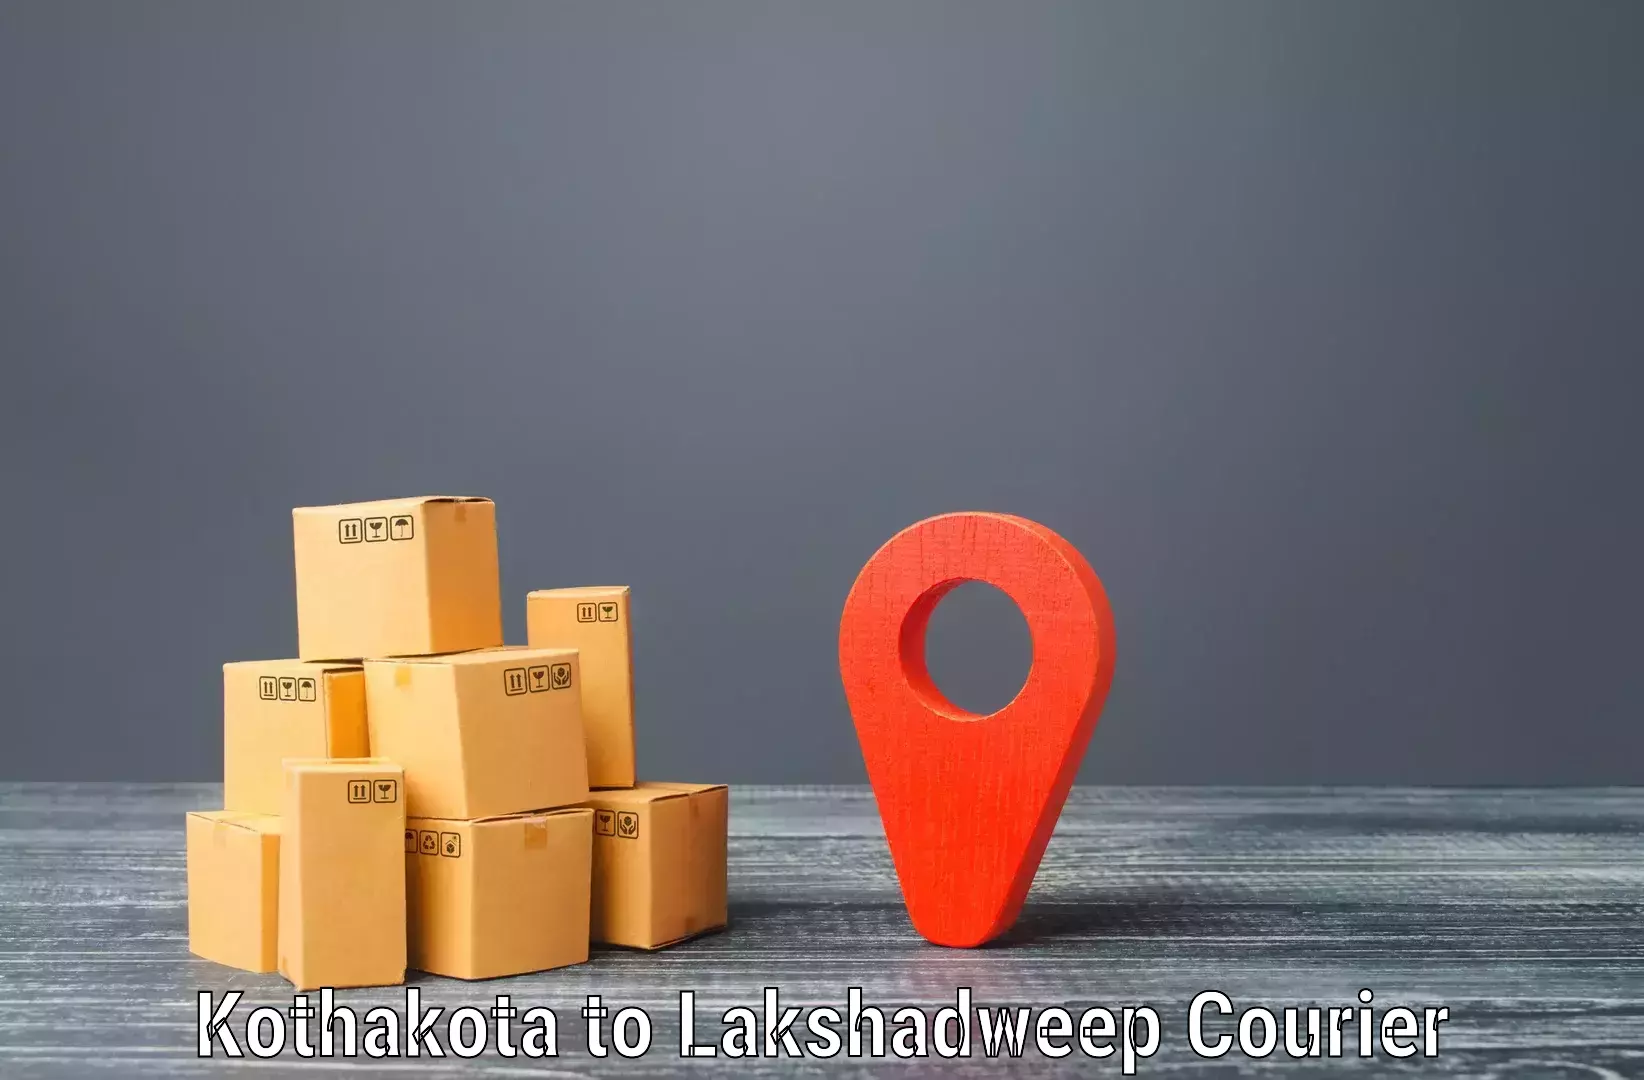 Special handling courier Kothakota to Lakshadweep